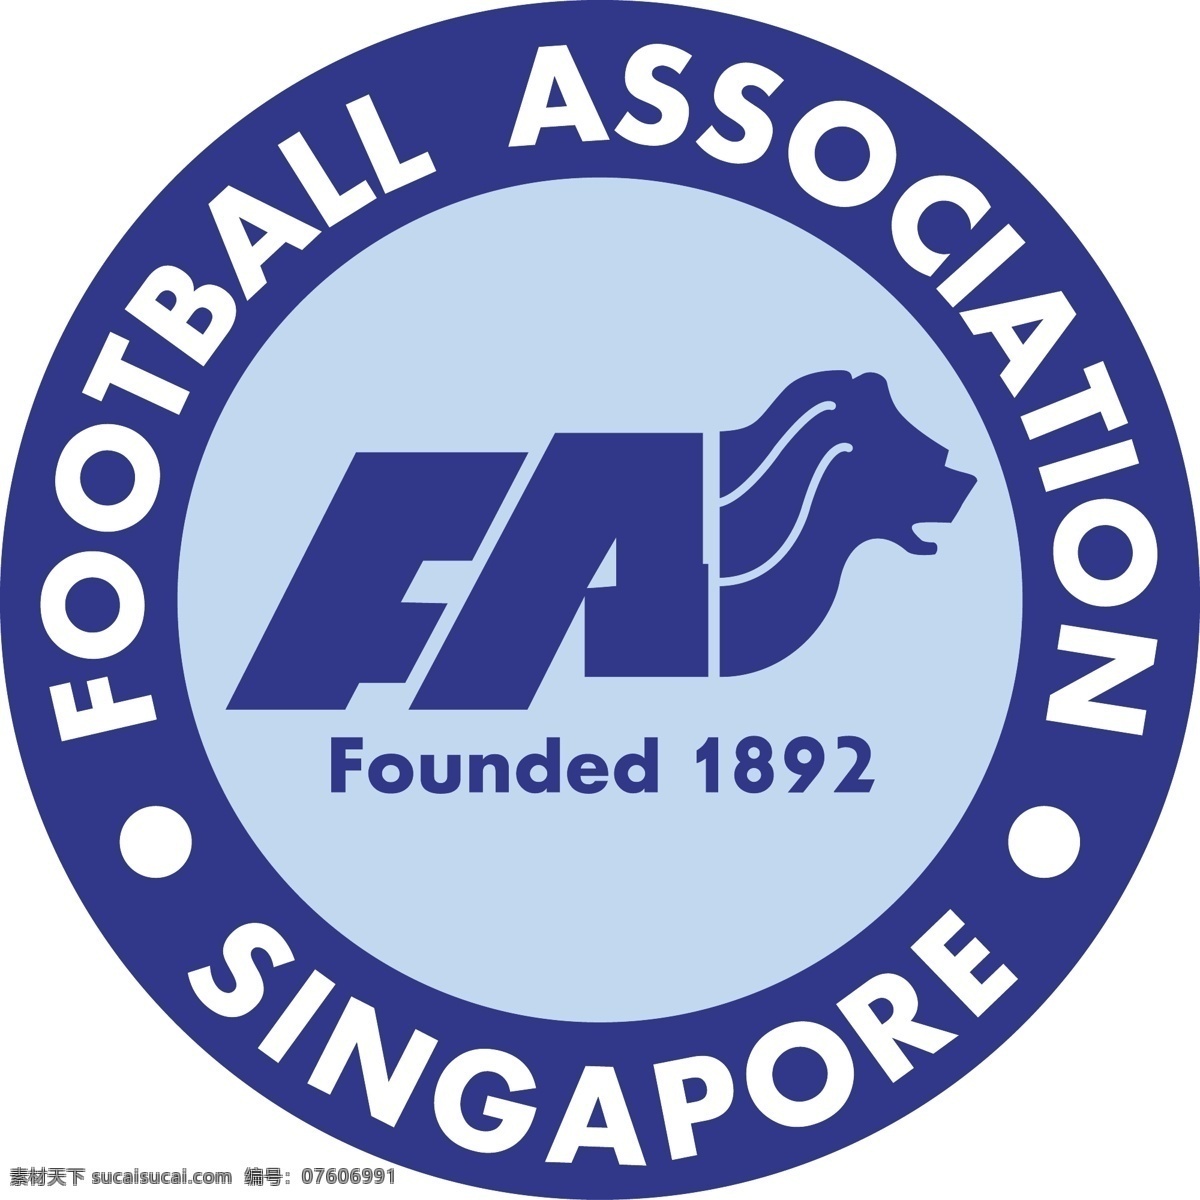 新加坡 足球 协会 自由 标志 标识 psd源文件 logo设计